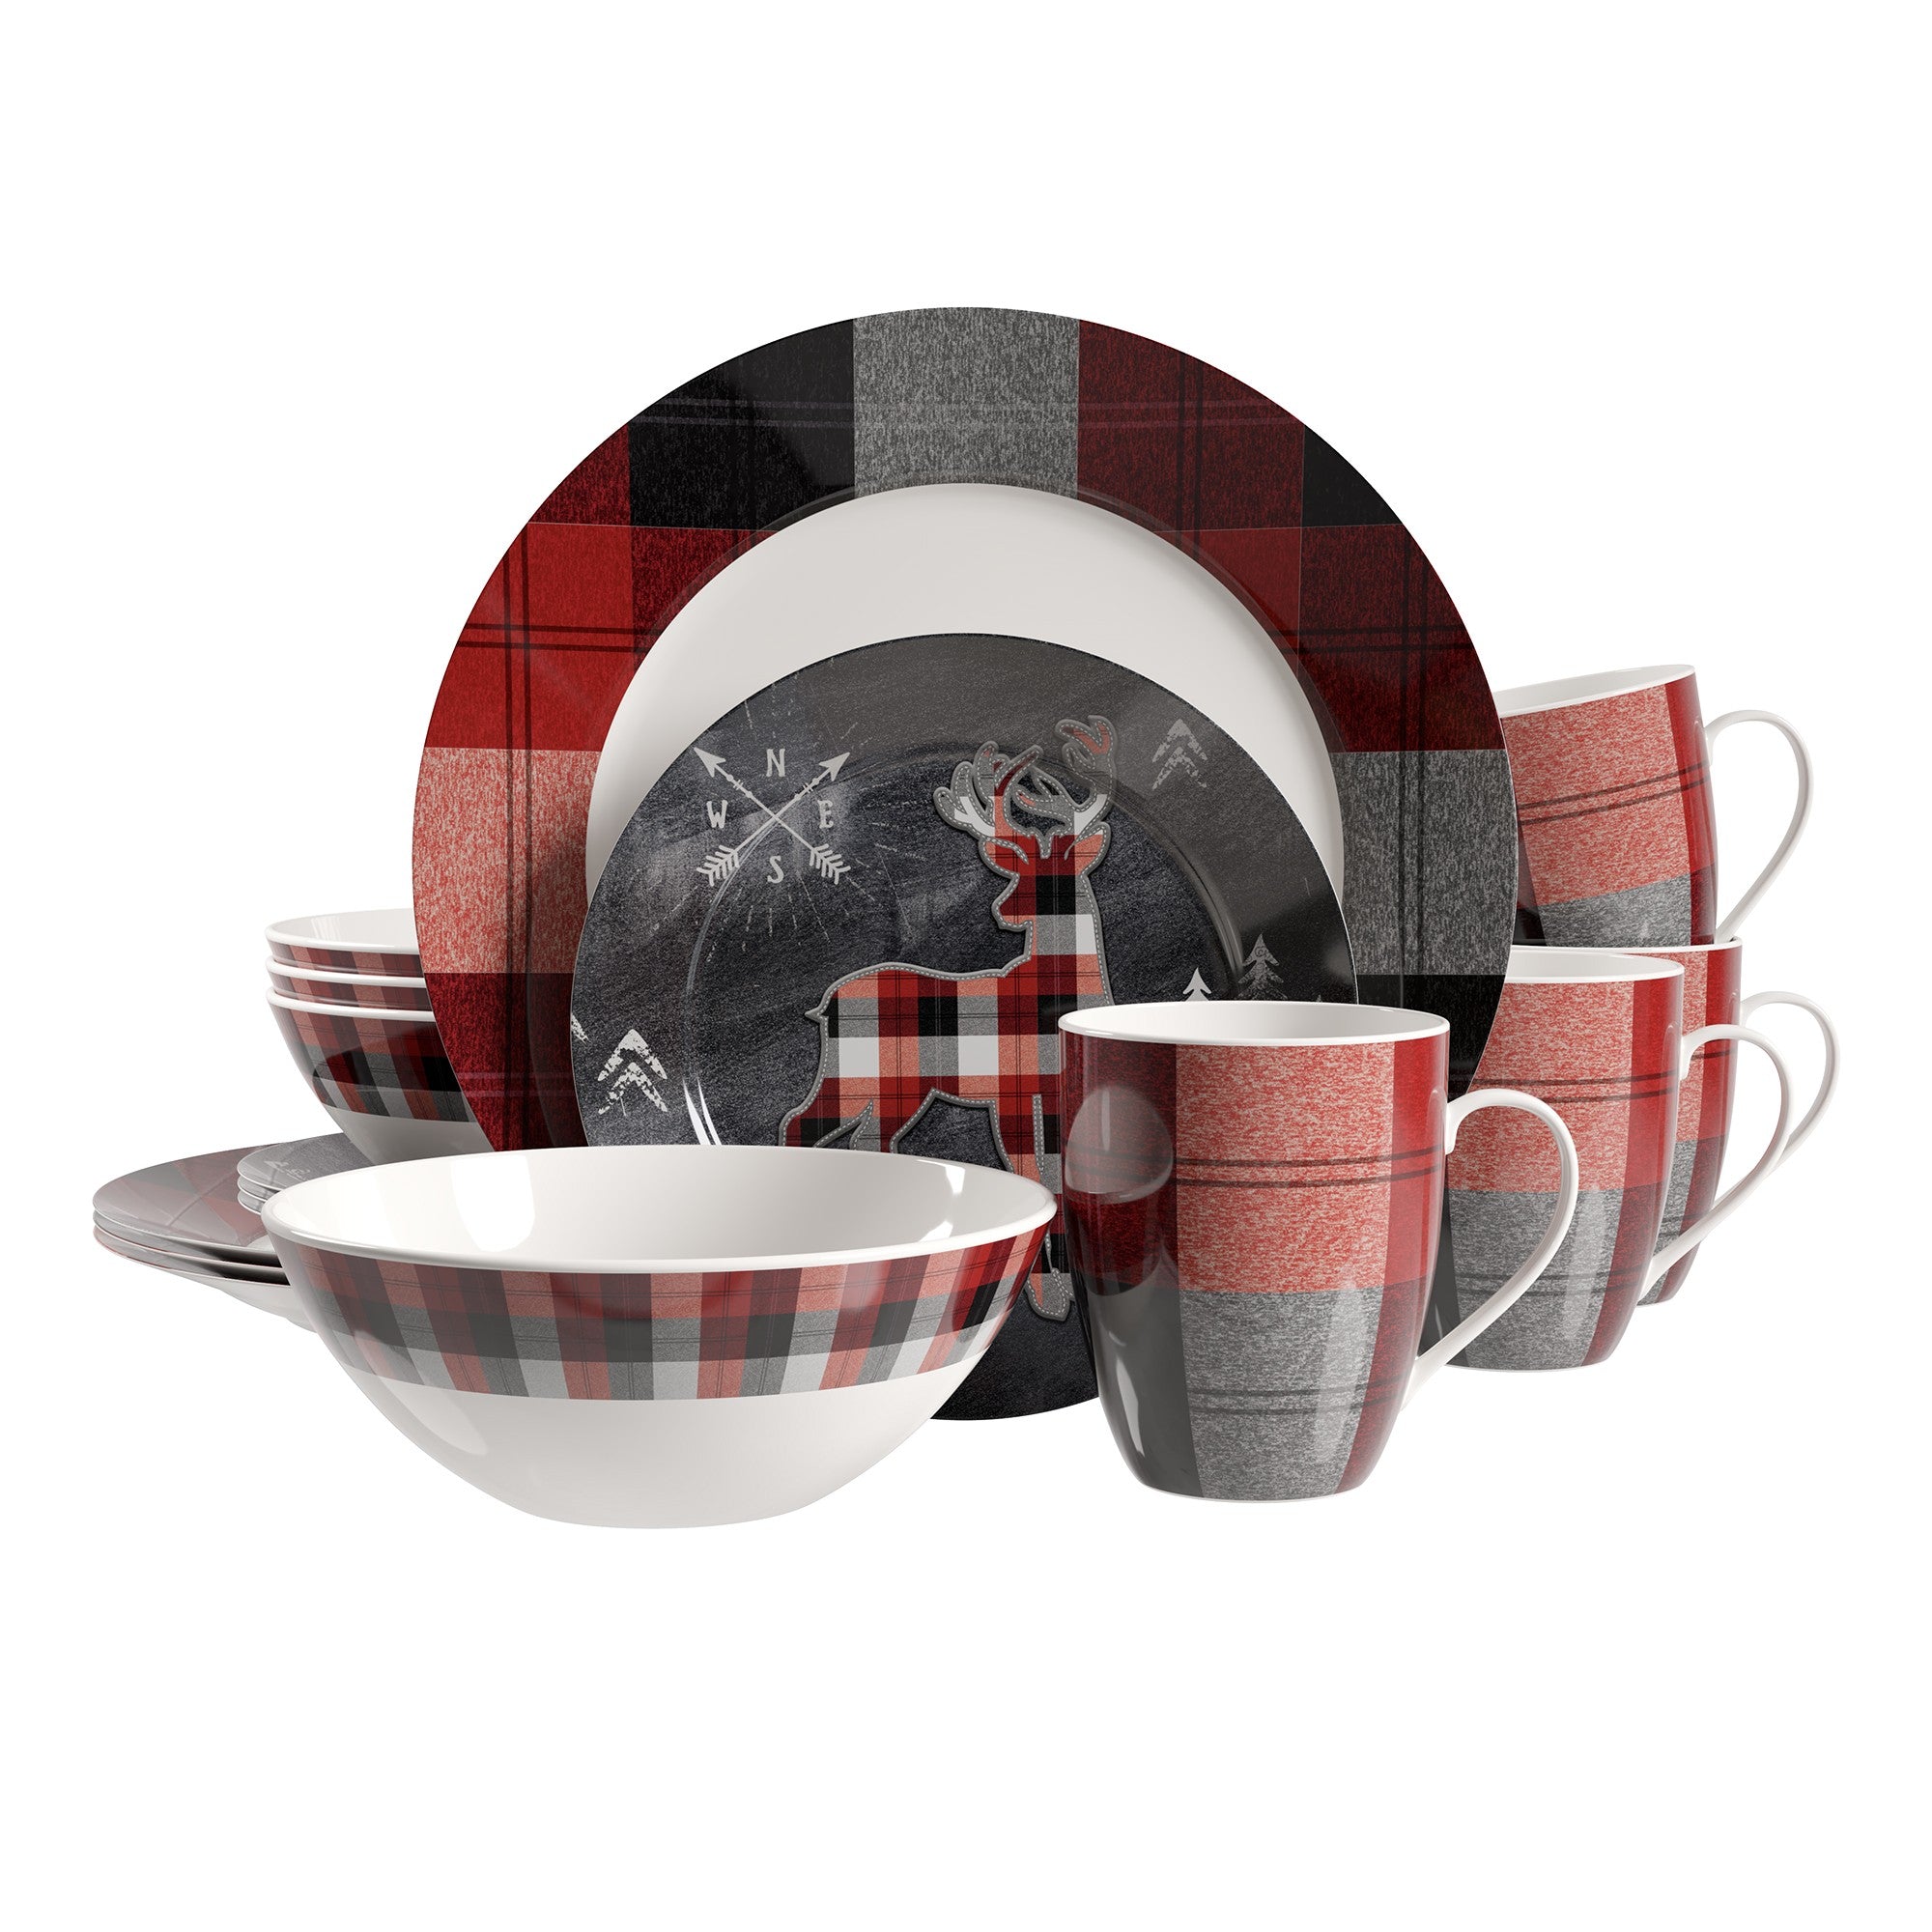 title:Safdie & Co. Luxury Premium Porcelain Dinnerset 16 Piece Set Banff;color:Multi